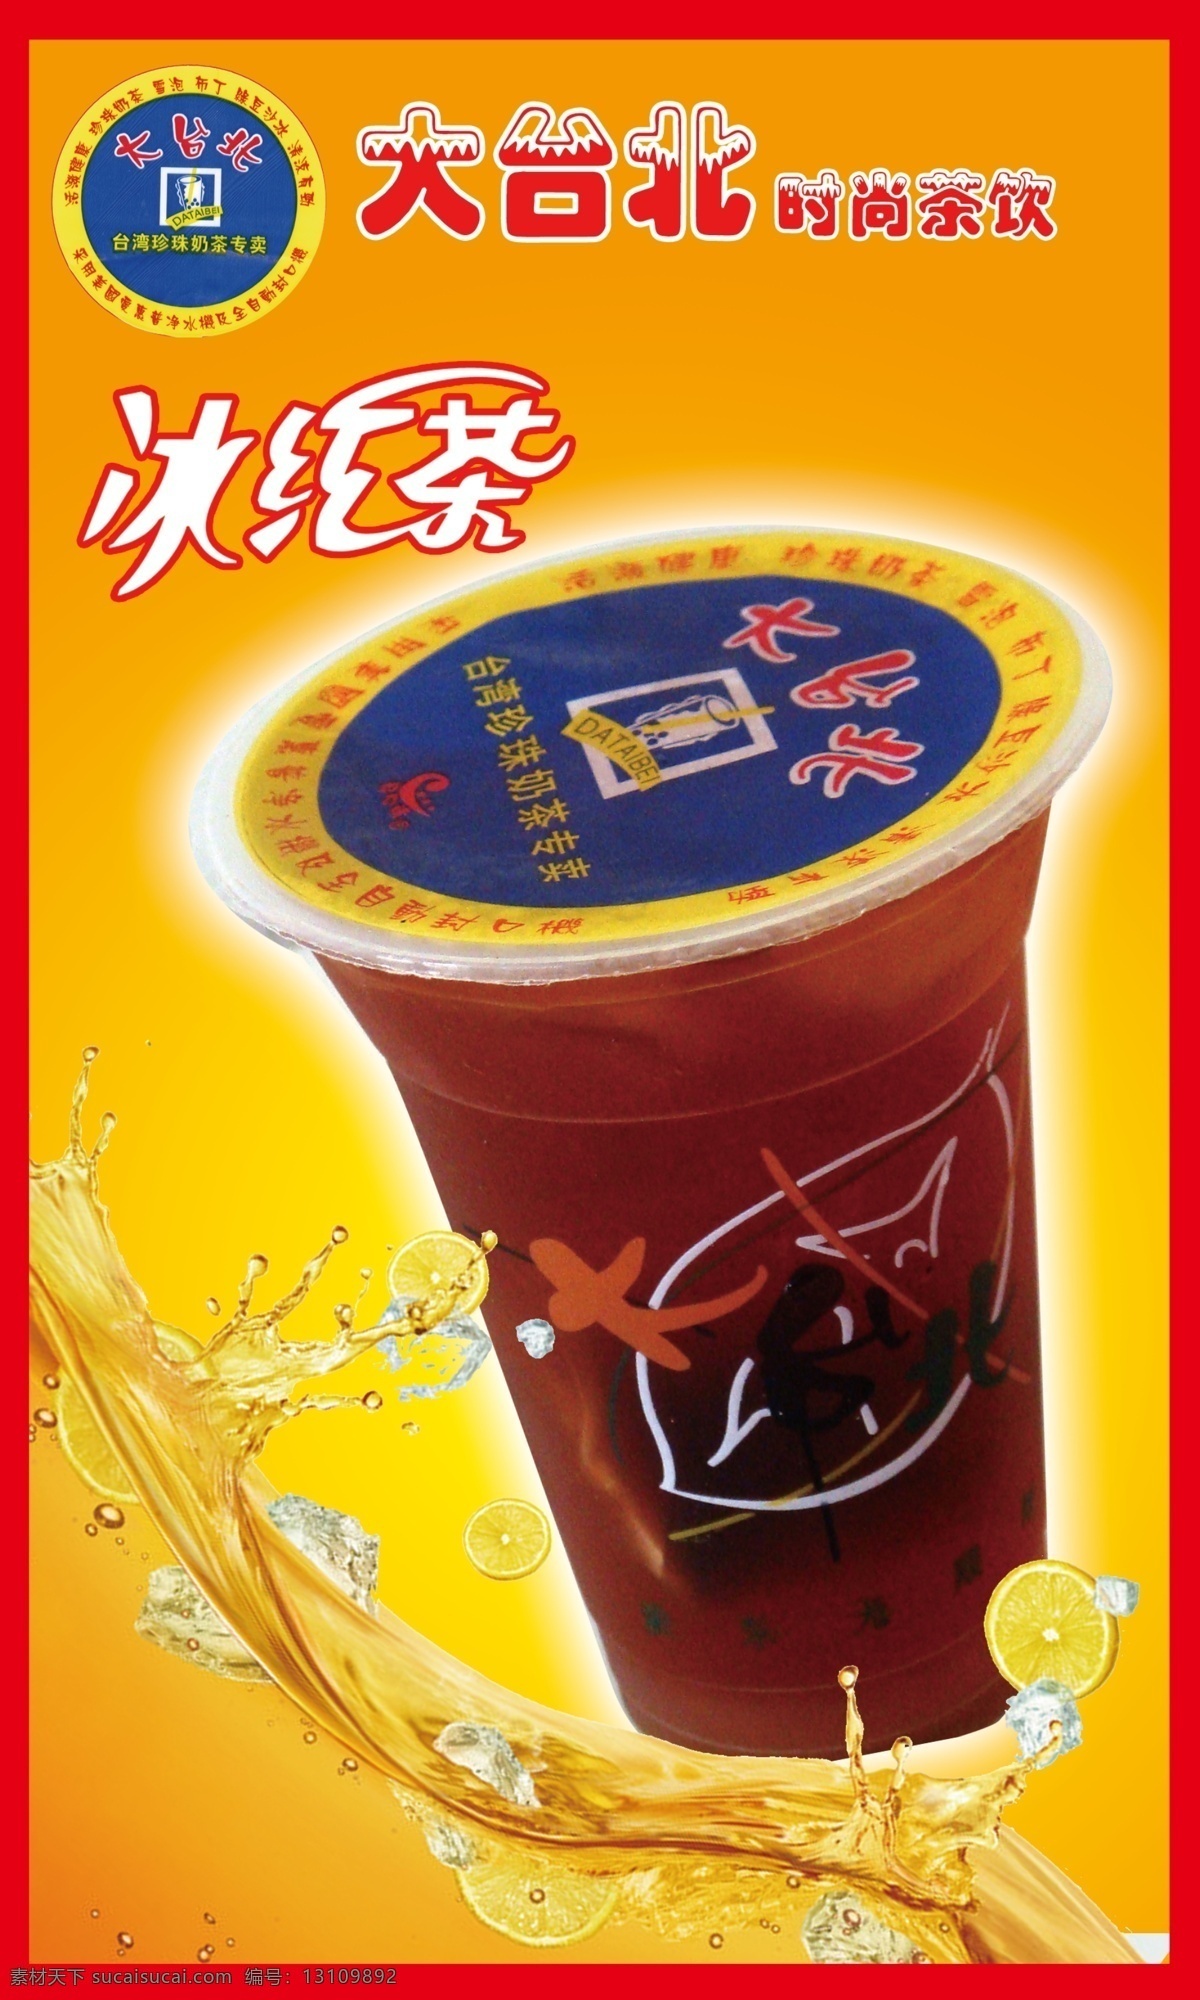 大台北 冰红茶 大 台北 珍珠 奶茶 橙黄 珍珠奶茶 广告设计模板 源文件